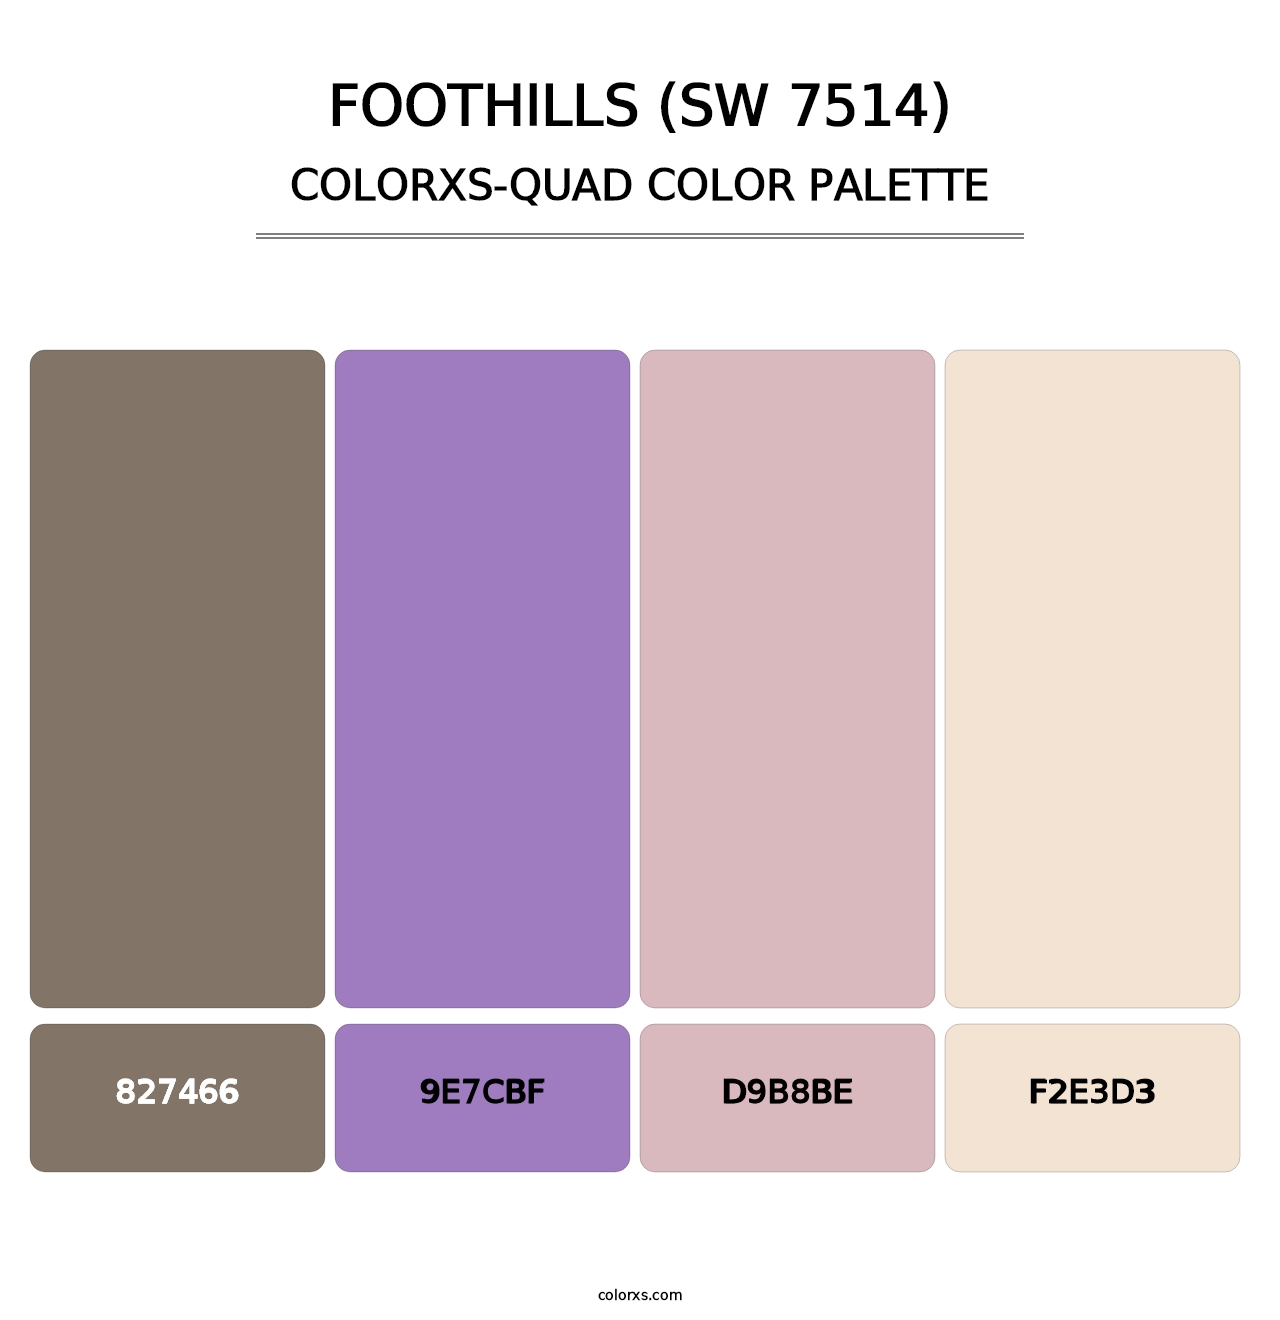 Foothills (SW 7514) - Colorxs Quad Palette